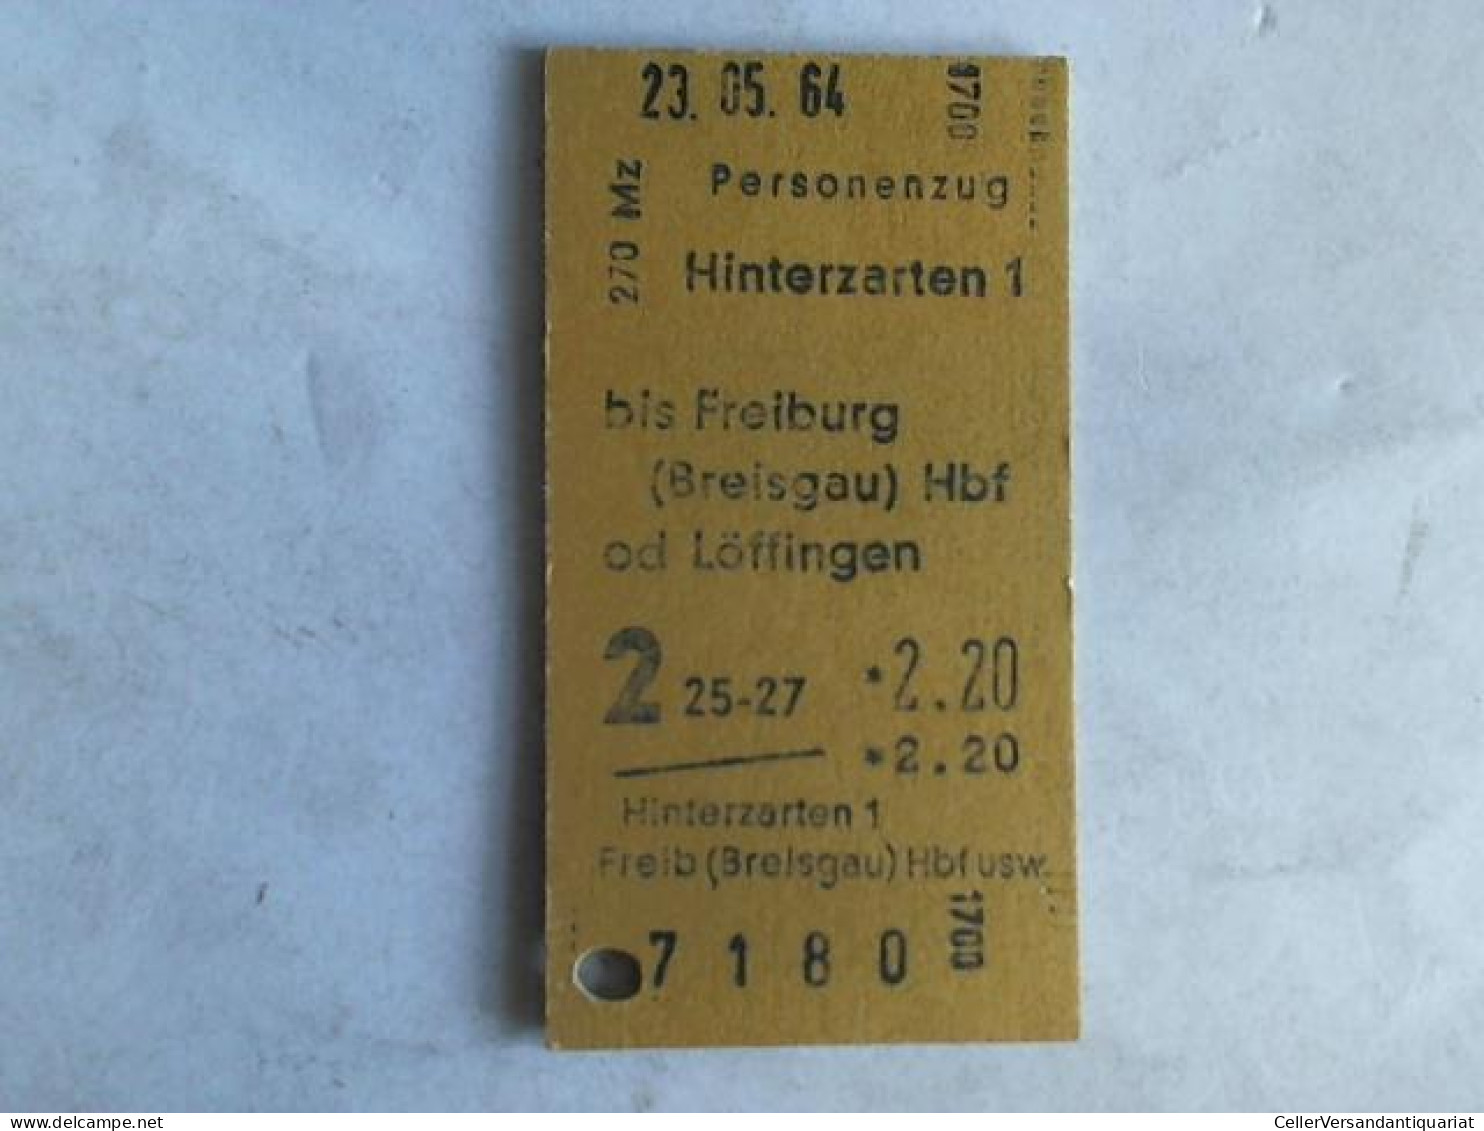 Fahrkarte Personenzug Hinterzarten 1 Bis Freiburg (Breisgau) Hbf Od Löffingen Von (Eisenbahn-Fahrkarte) - Ohne Zuordnung